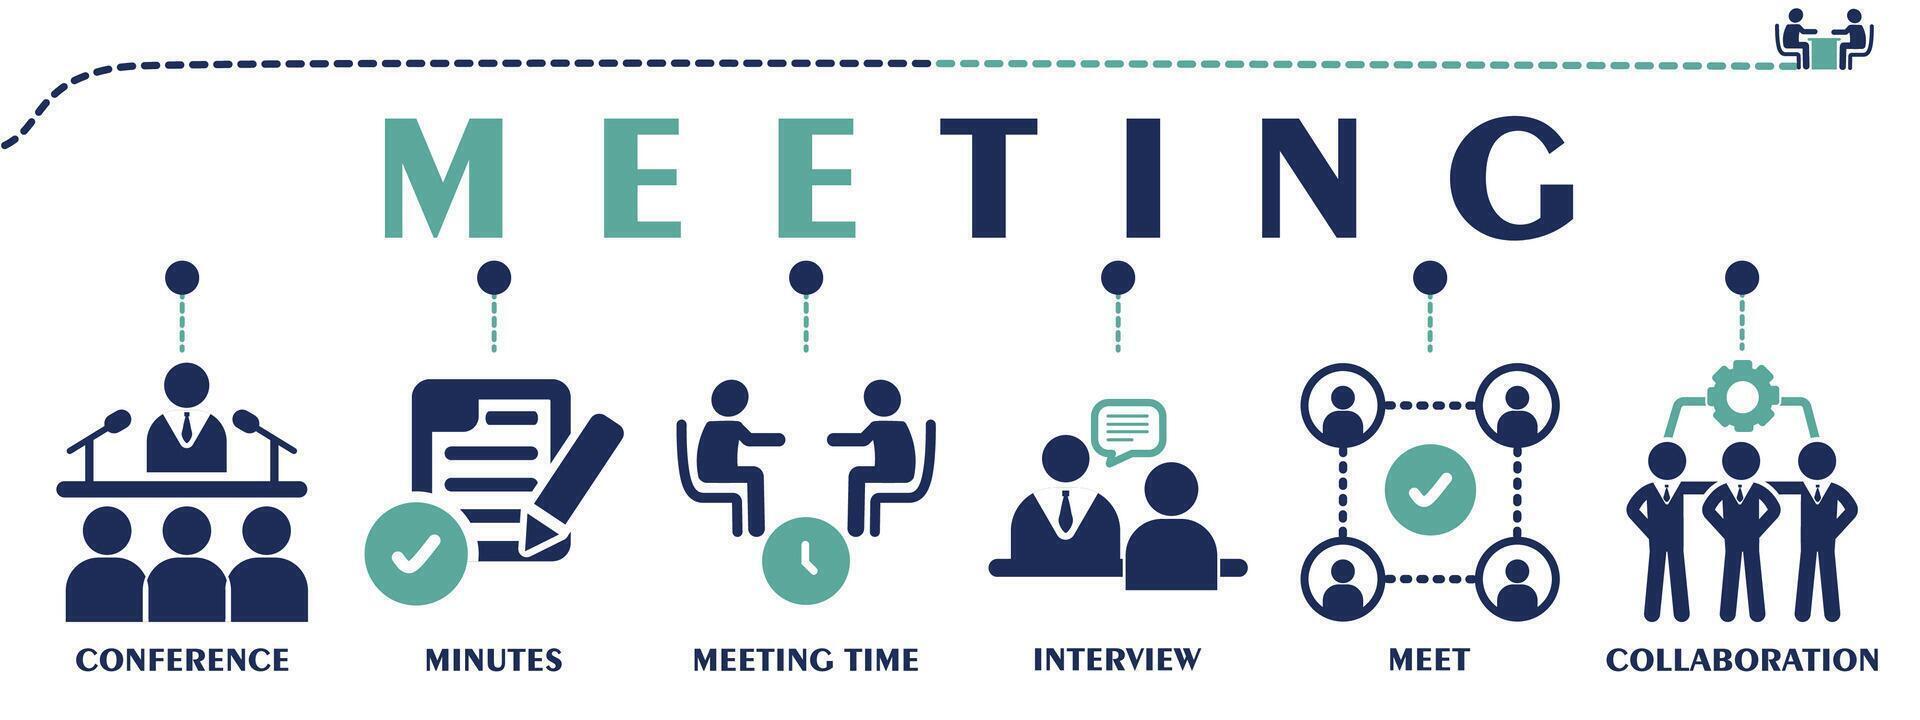 vergadering banier web solide pictogrammen. vector illustratie concept met een icoon van conferentie, minuten, vergadering tijd, interview, ontmoeten en samenwerking